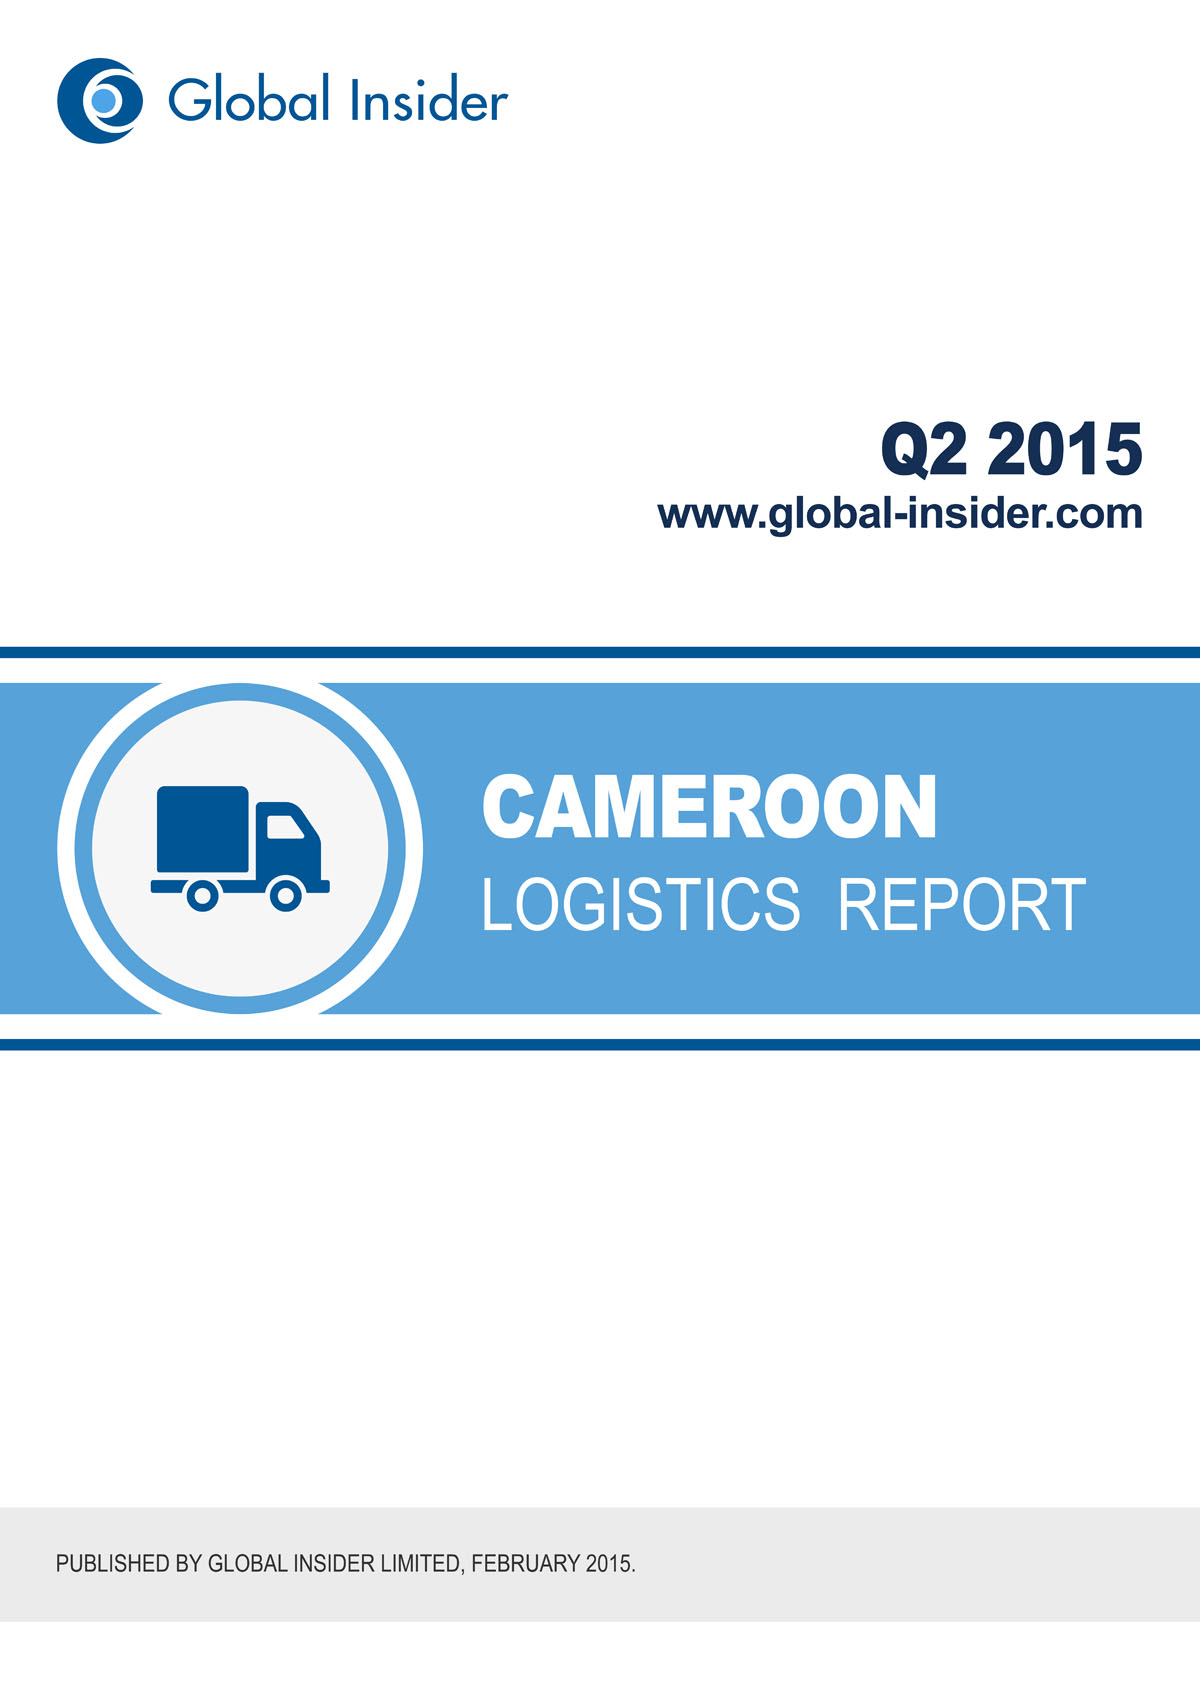 Cameroon Logistics Report